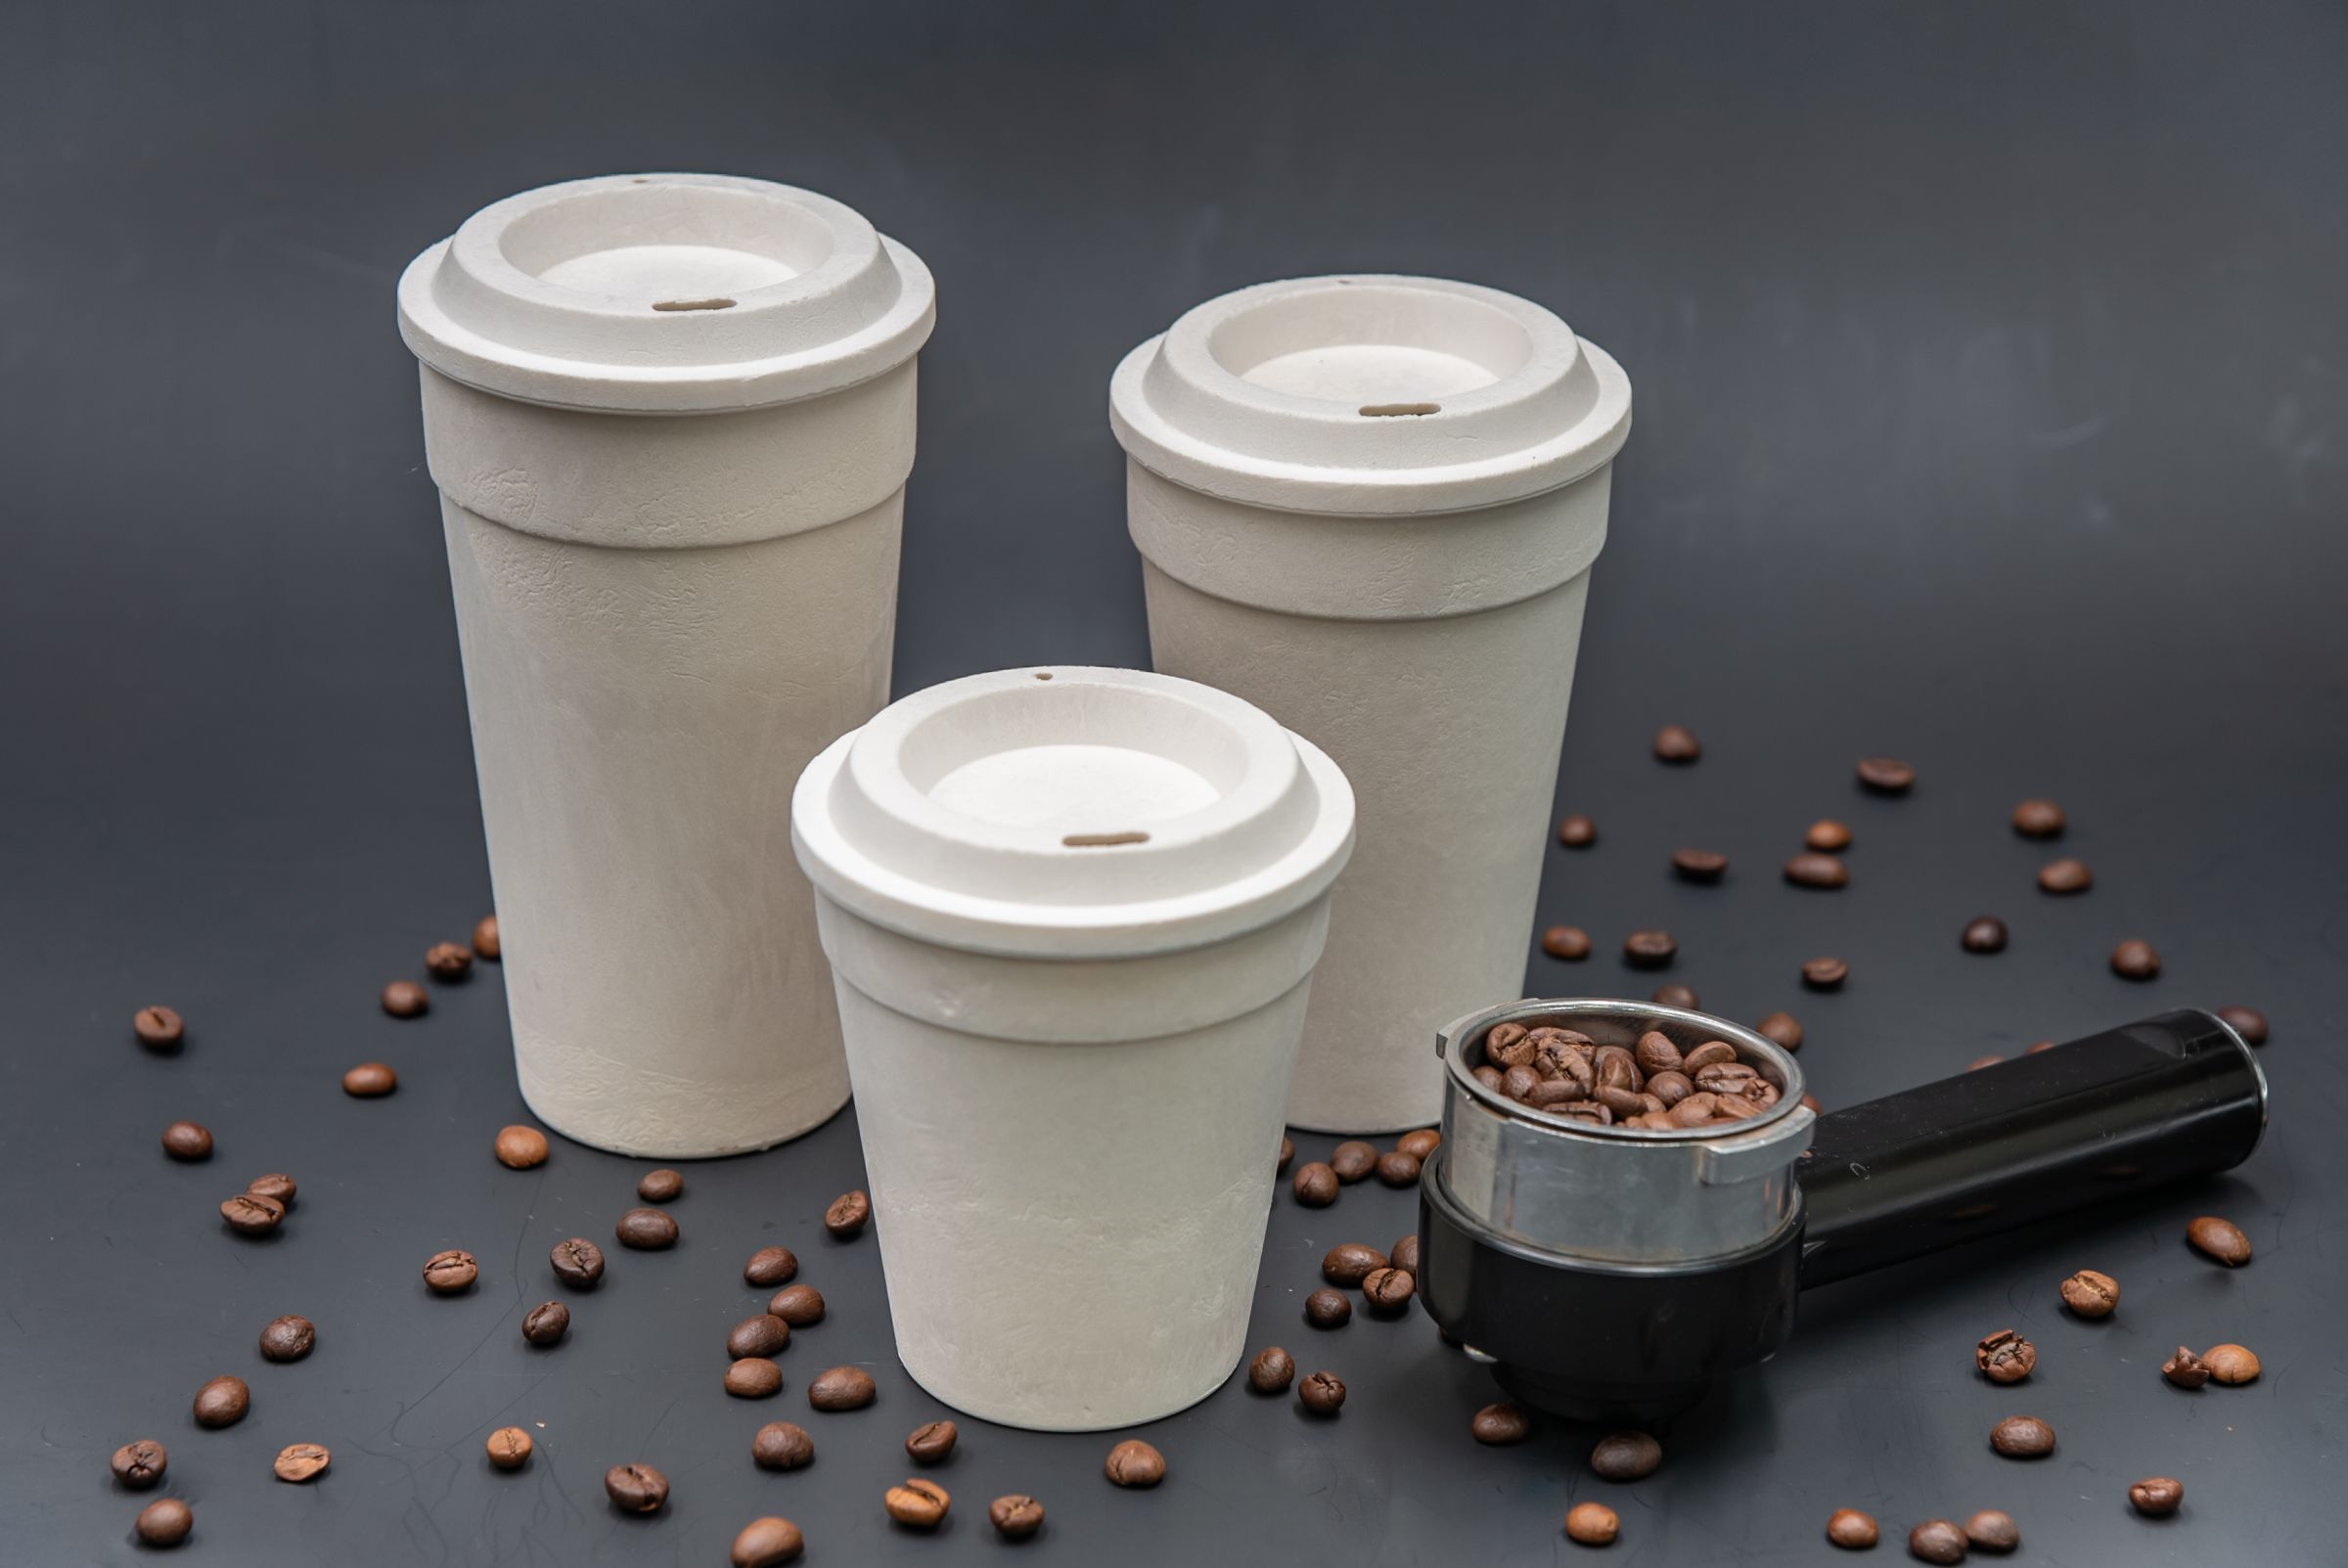 El café para llevar y los vasos desechables ecológicos